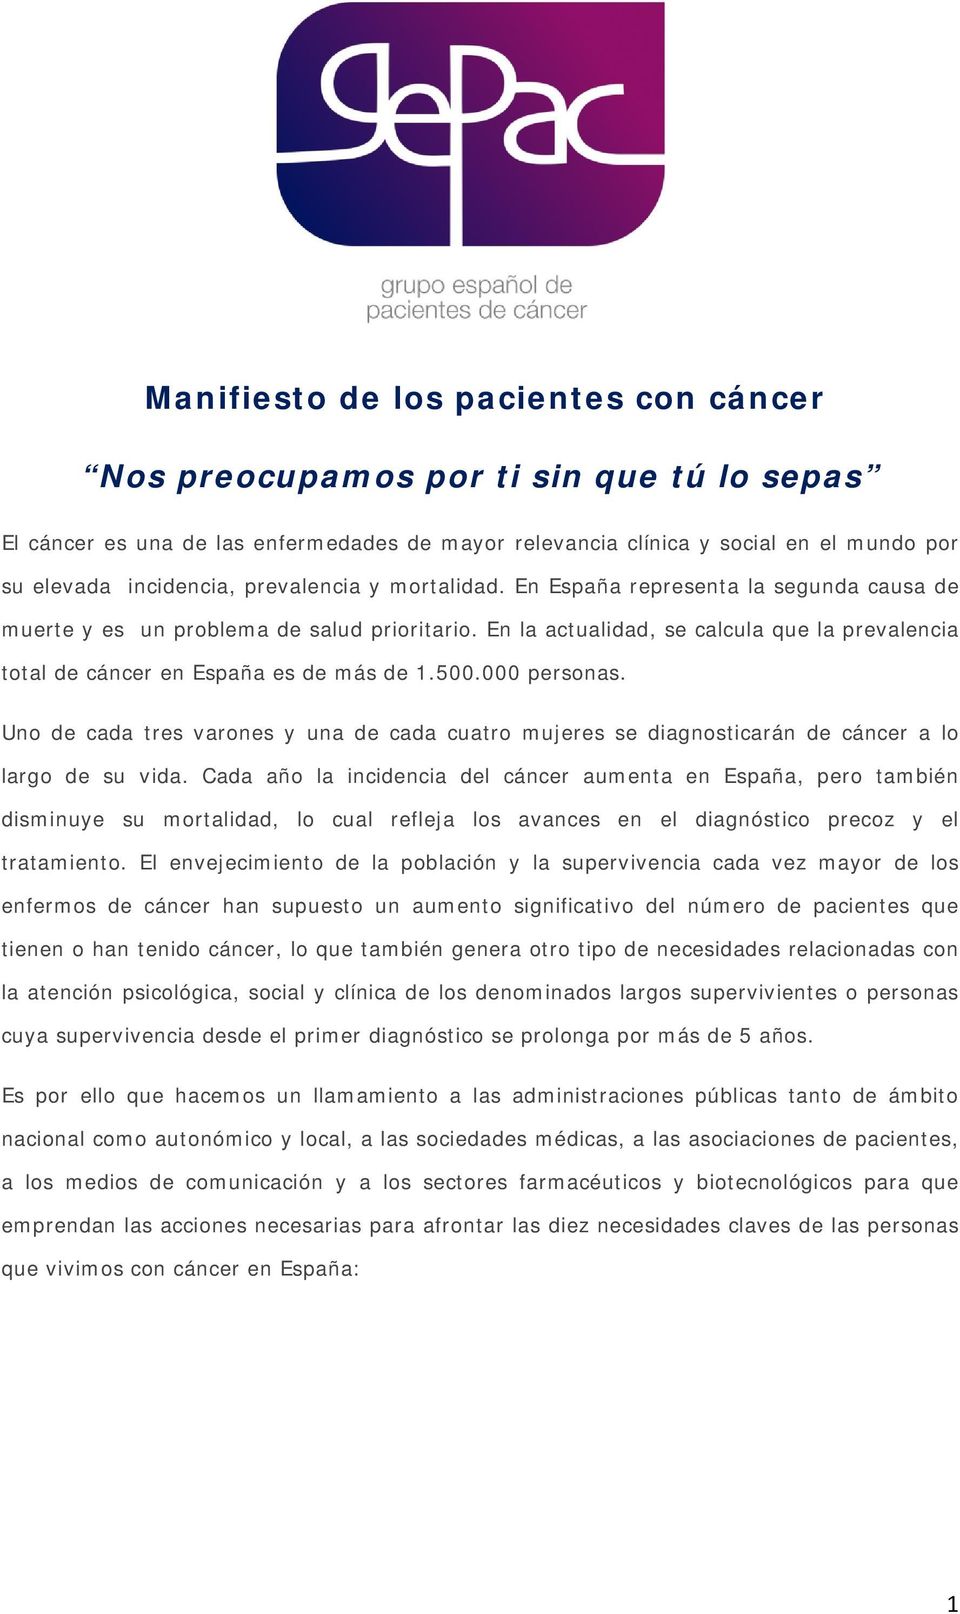 En la actualidad, se calcula que la prevalencia total de cáncer en España es de más de 1.500.000 personas.